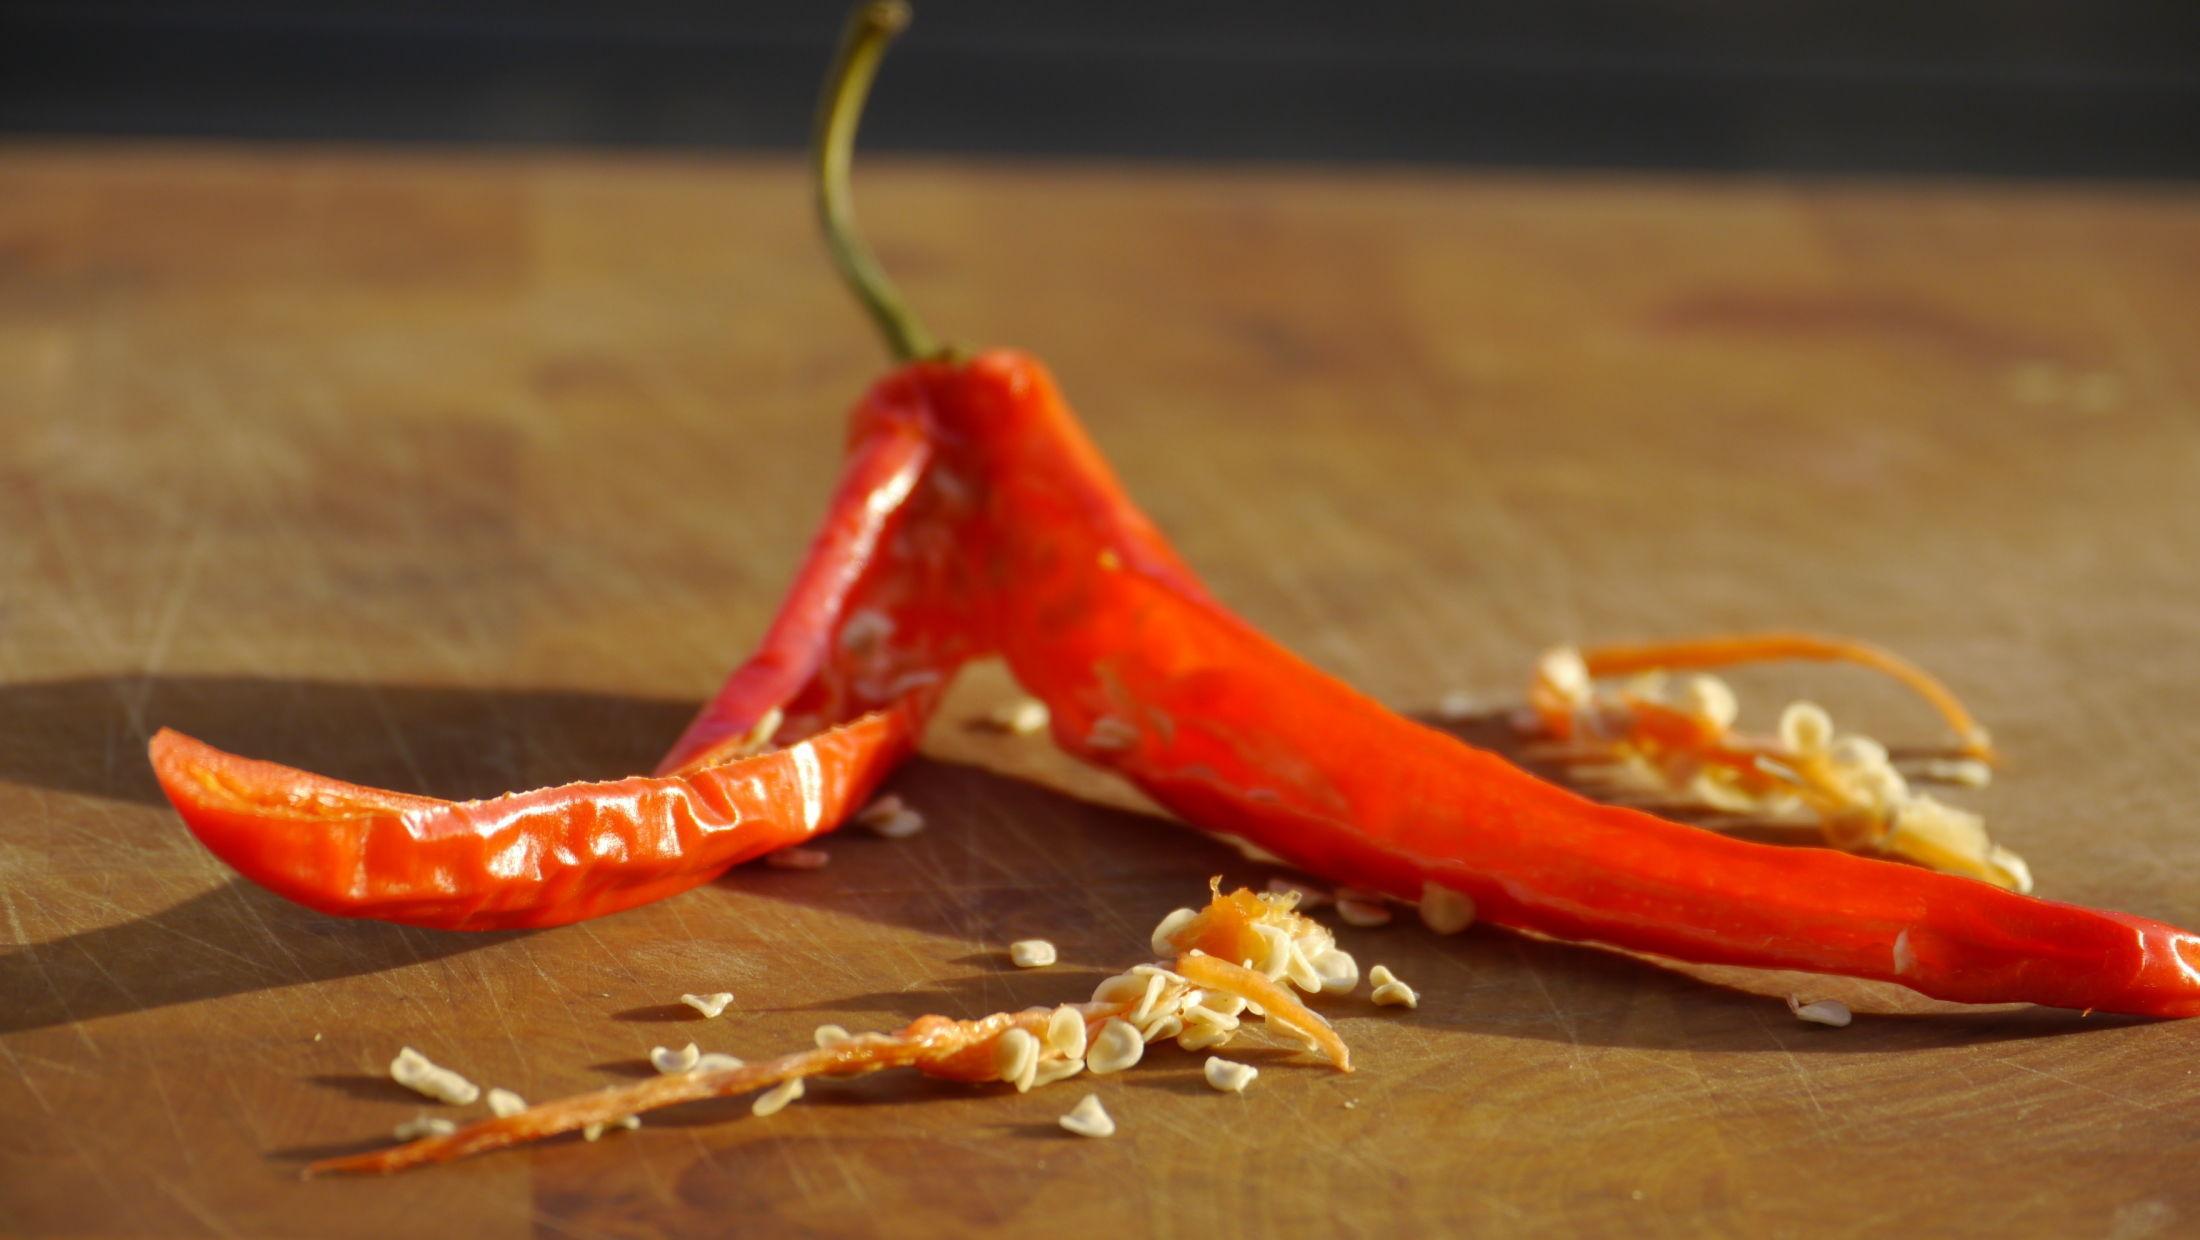 TØRKET CHILI: Del chili i to og legg det på bakepapir i ovnen eller ute i solen. Foto: Lars Moen